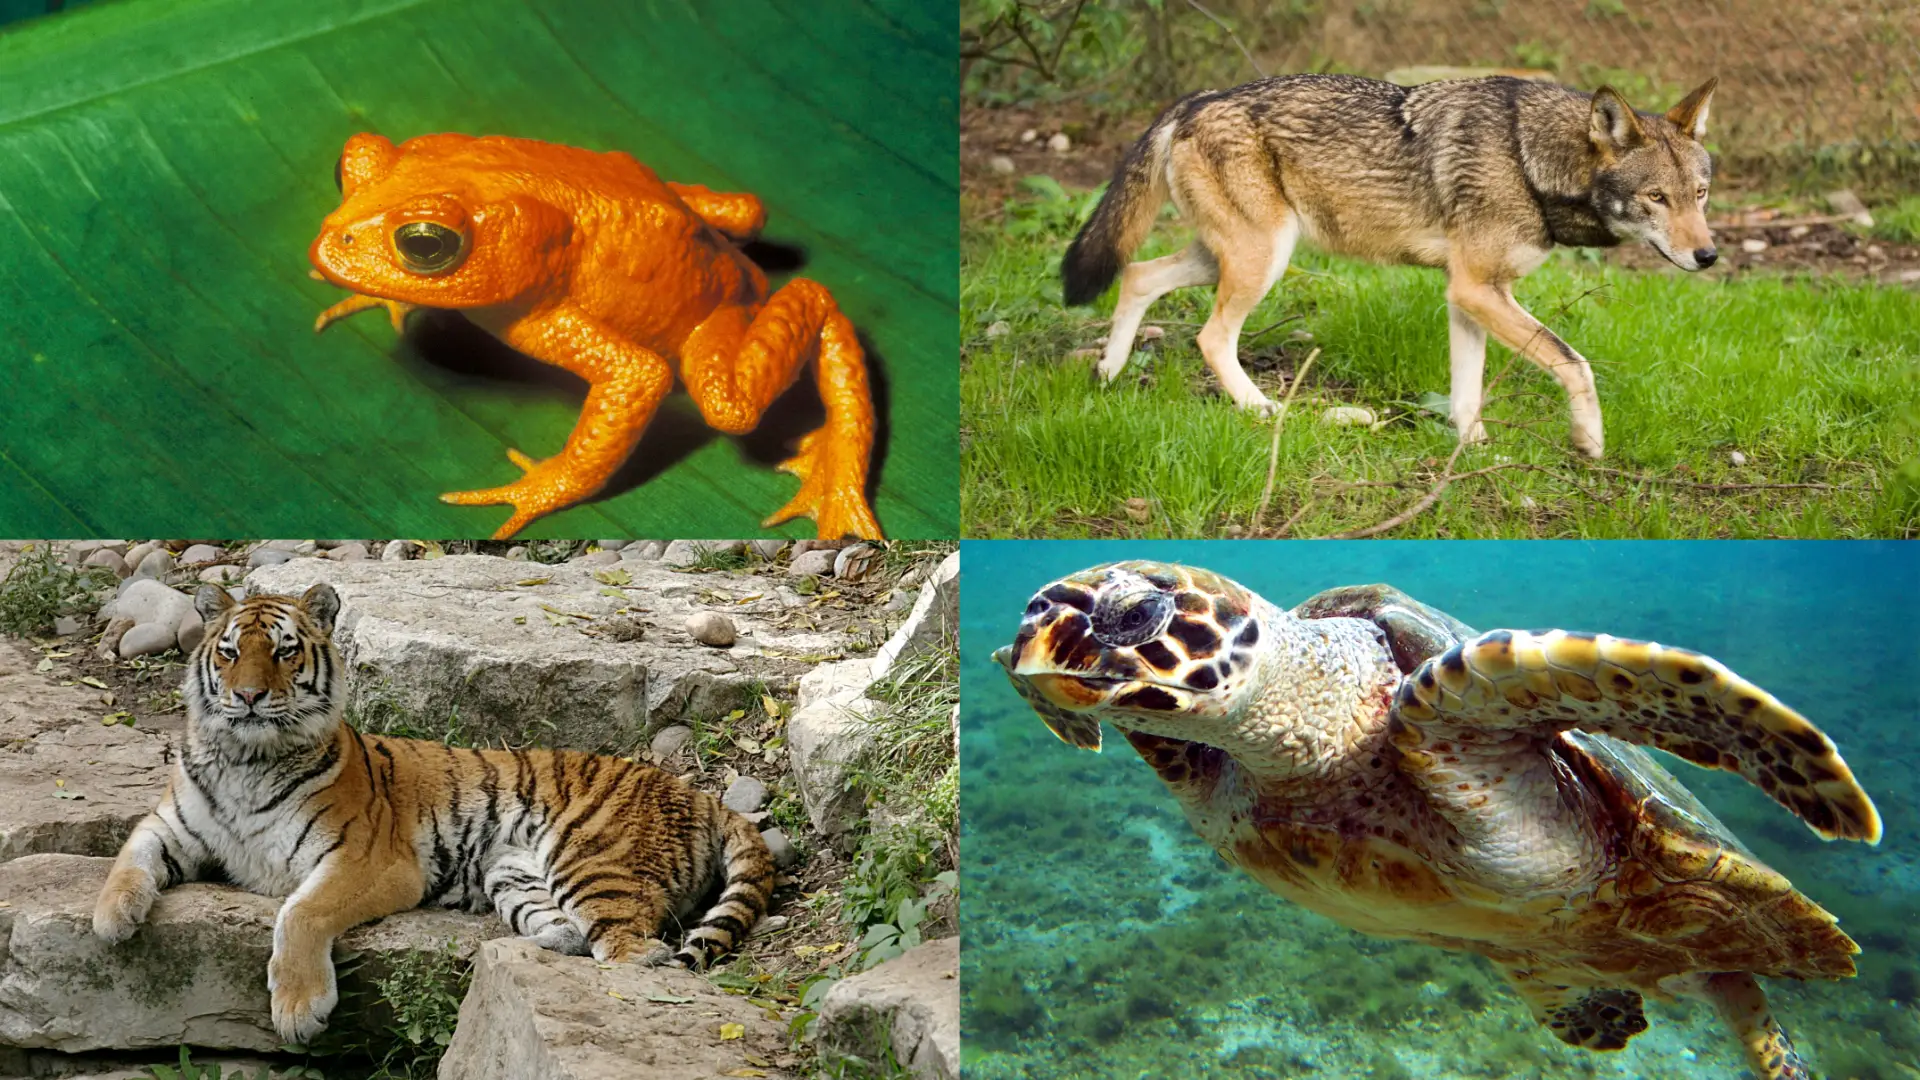 Animales terrestres y acuaticos